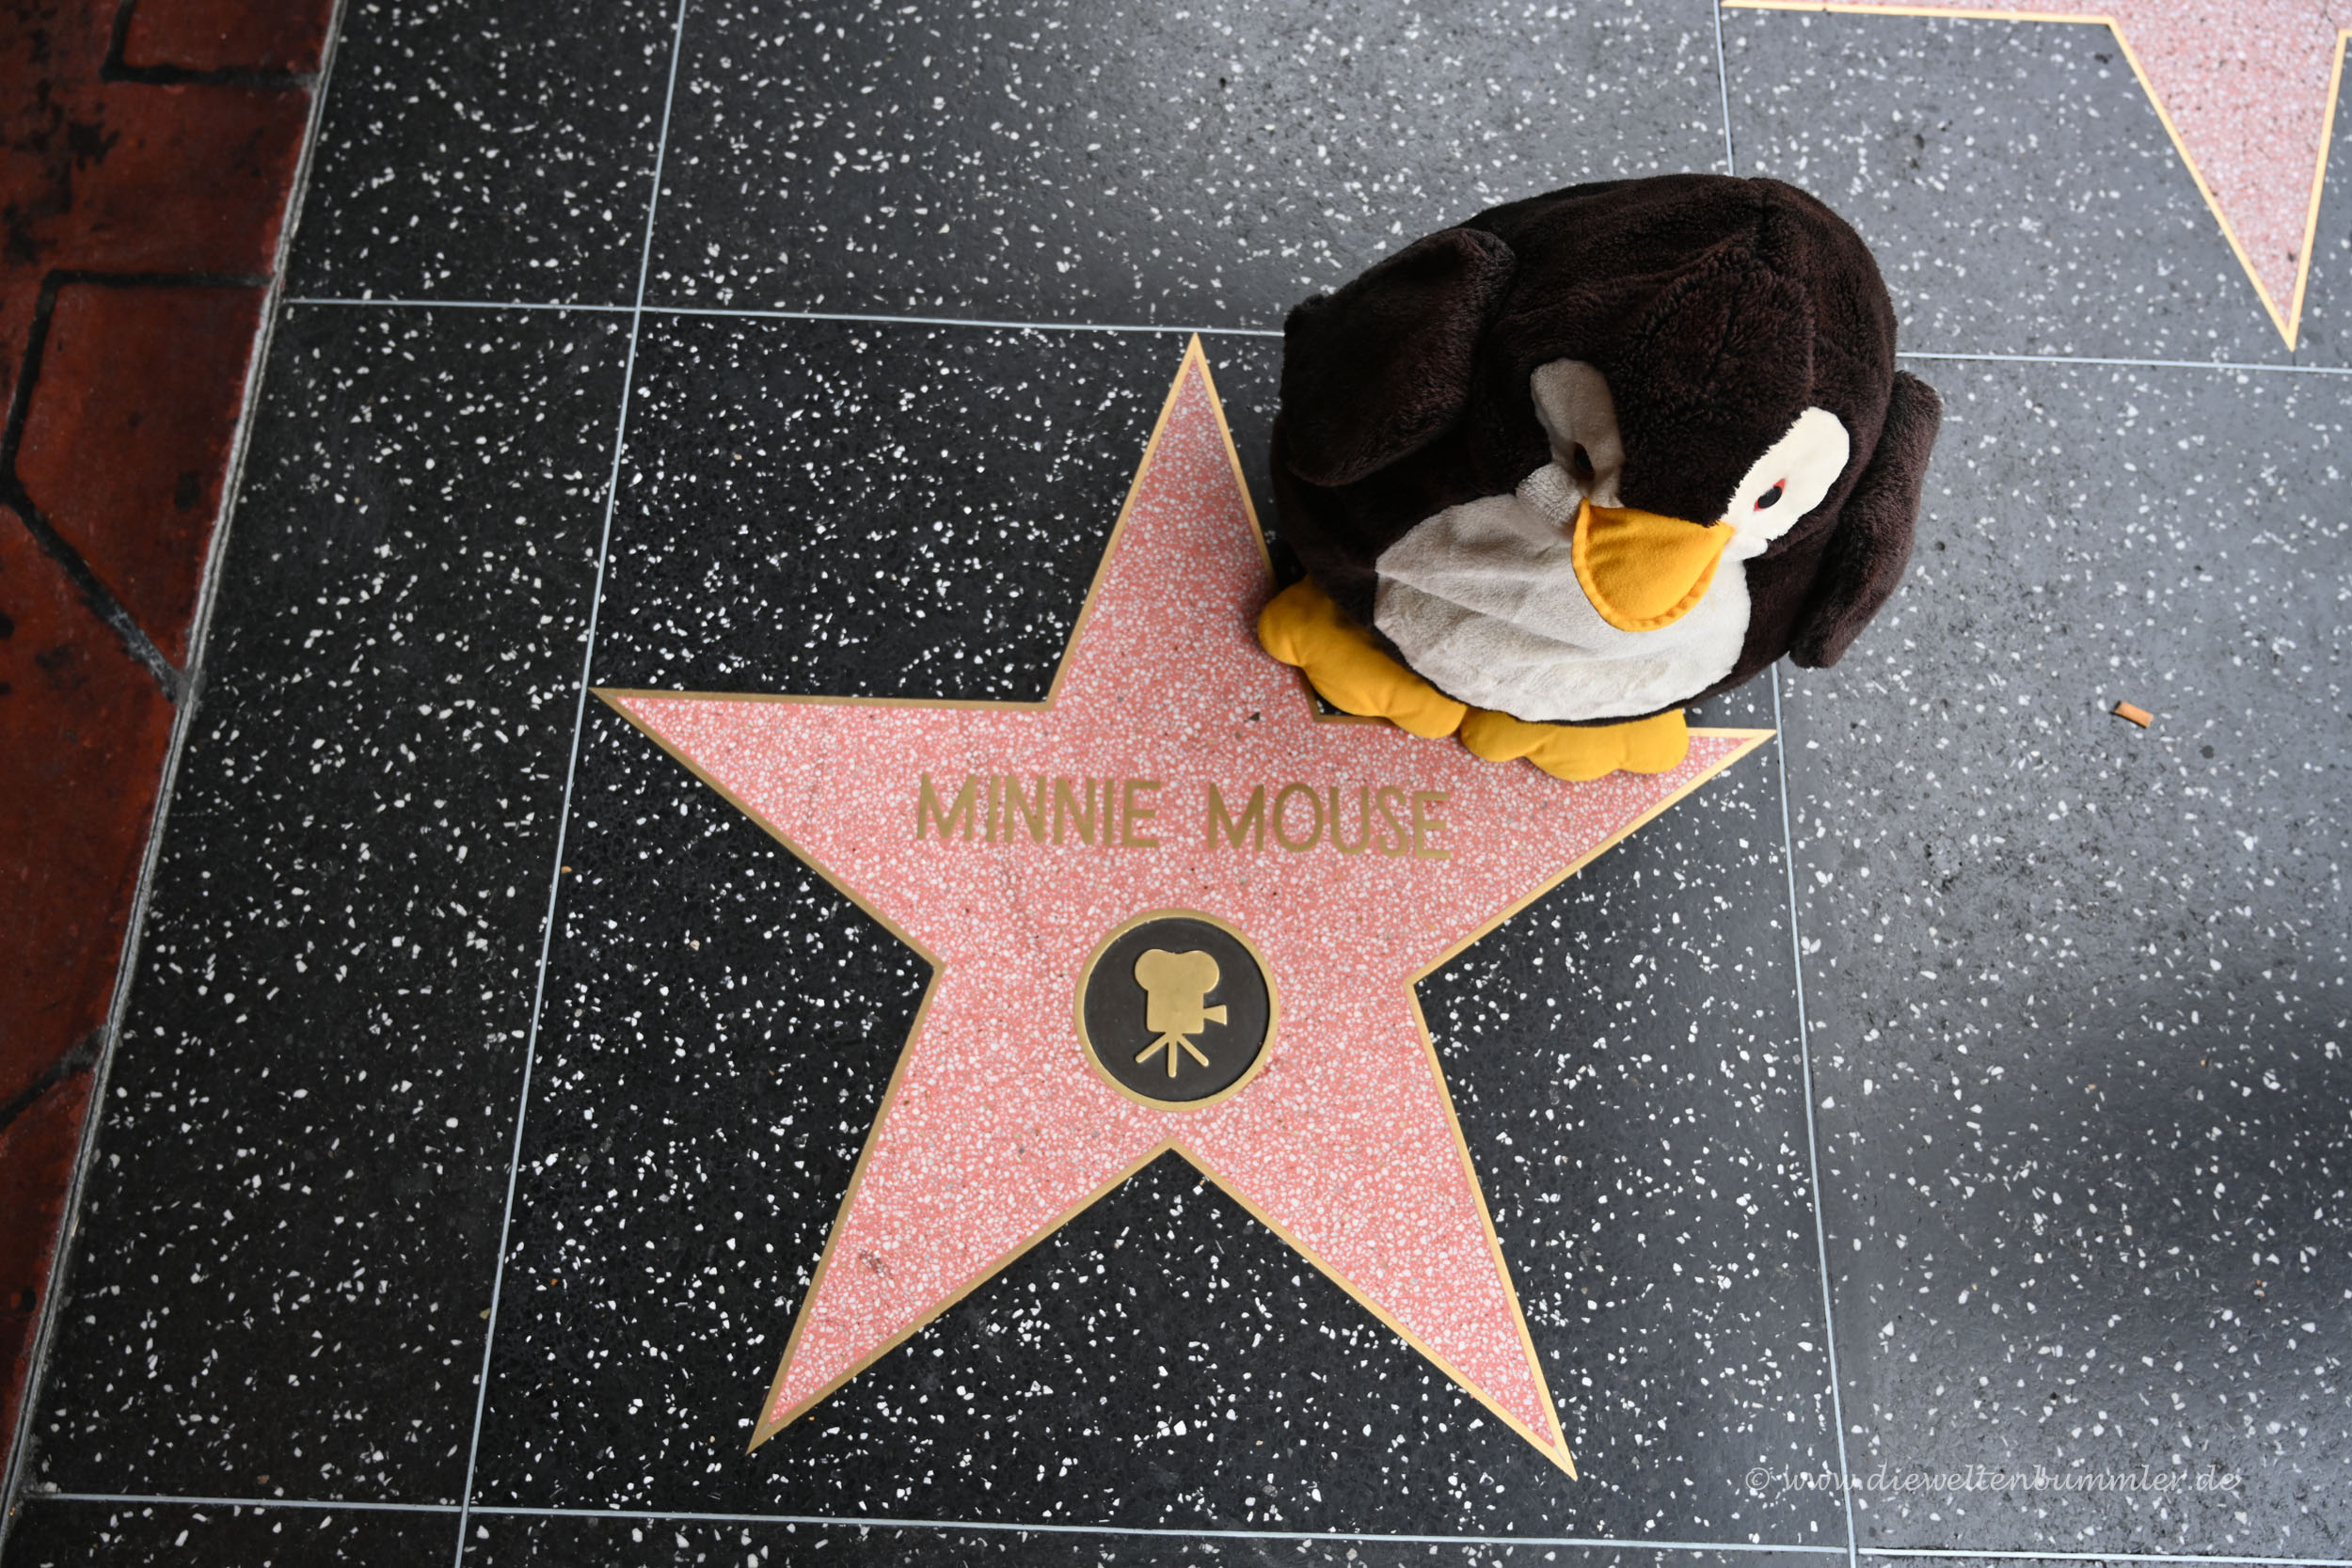 Walk of Fame - Minnie Maus